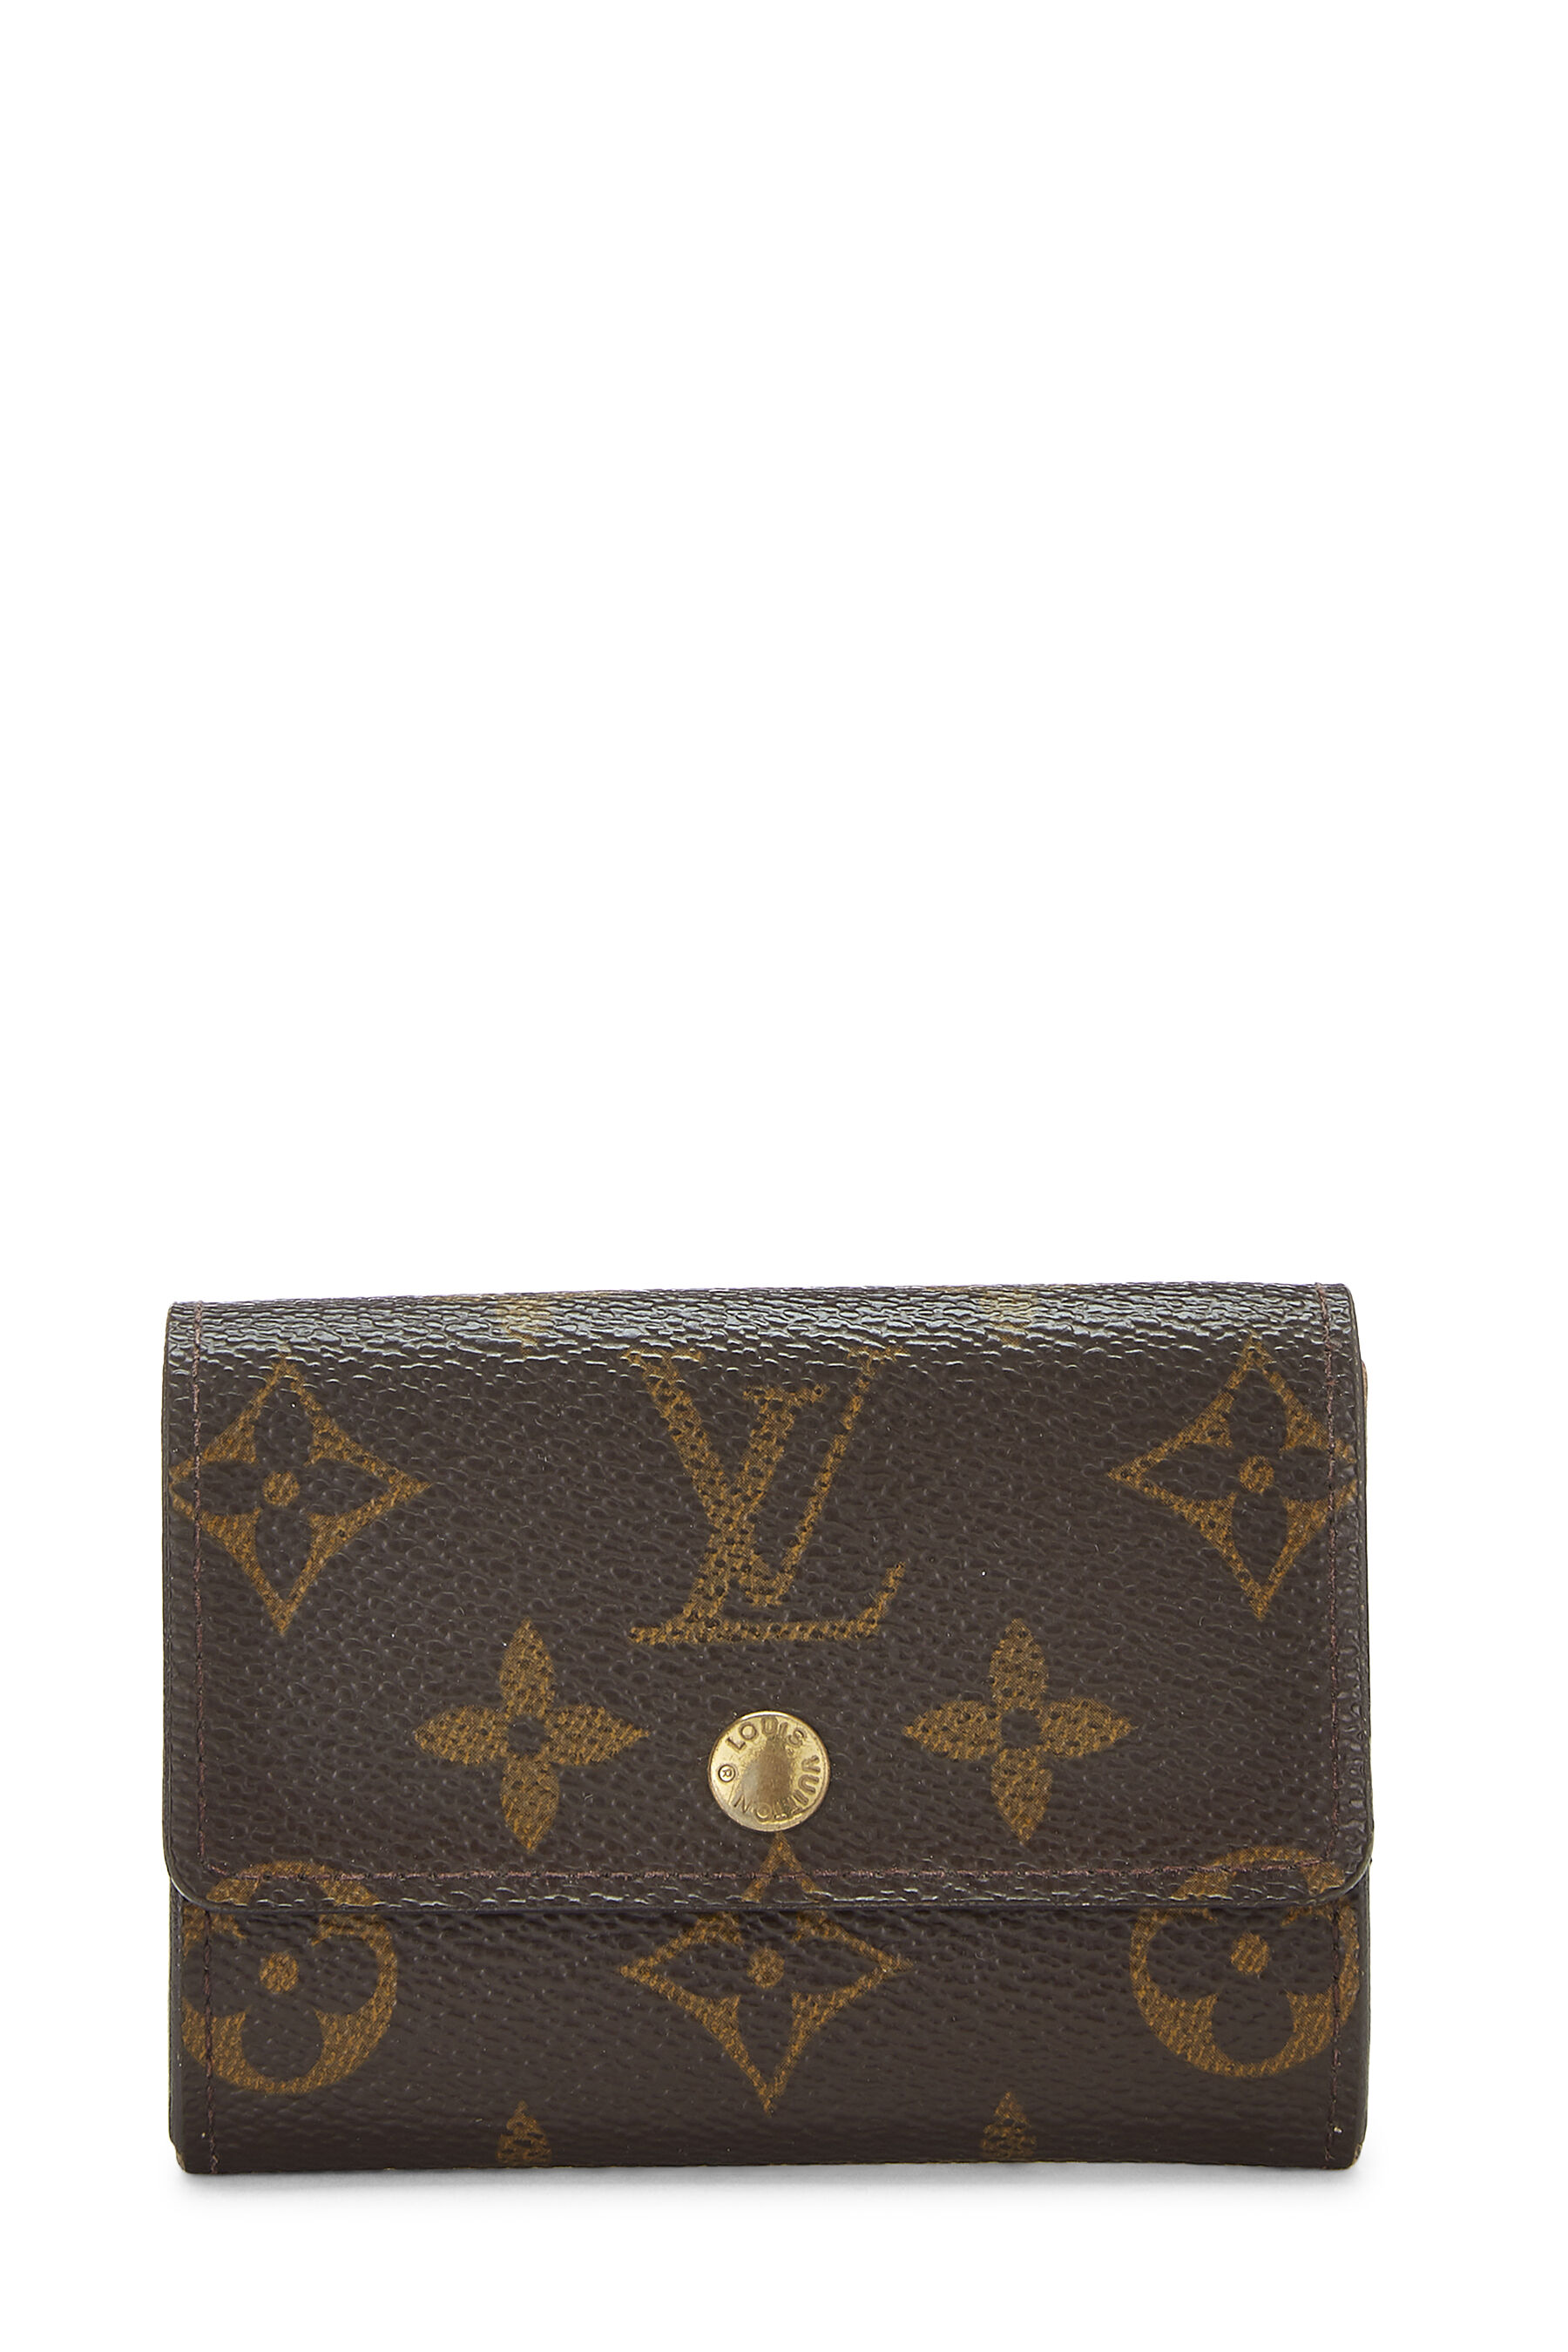 Louis Vuitton, Bags, Authentic Louis Vuitton Ludlow Wallet